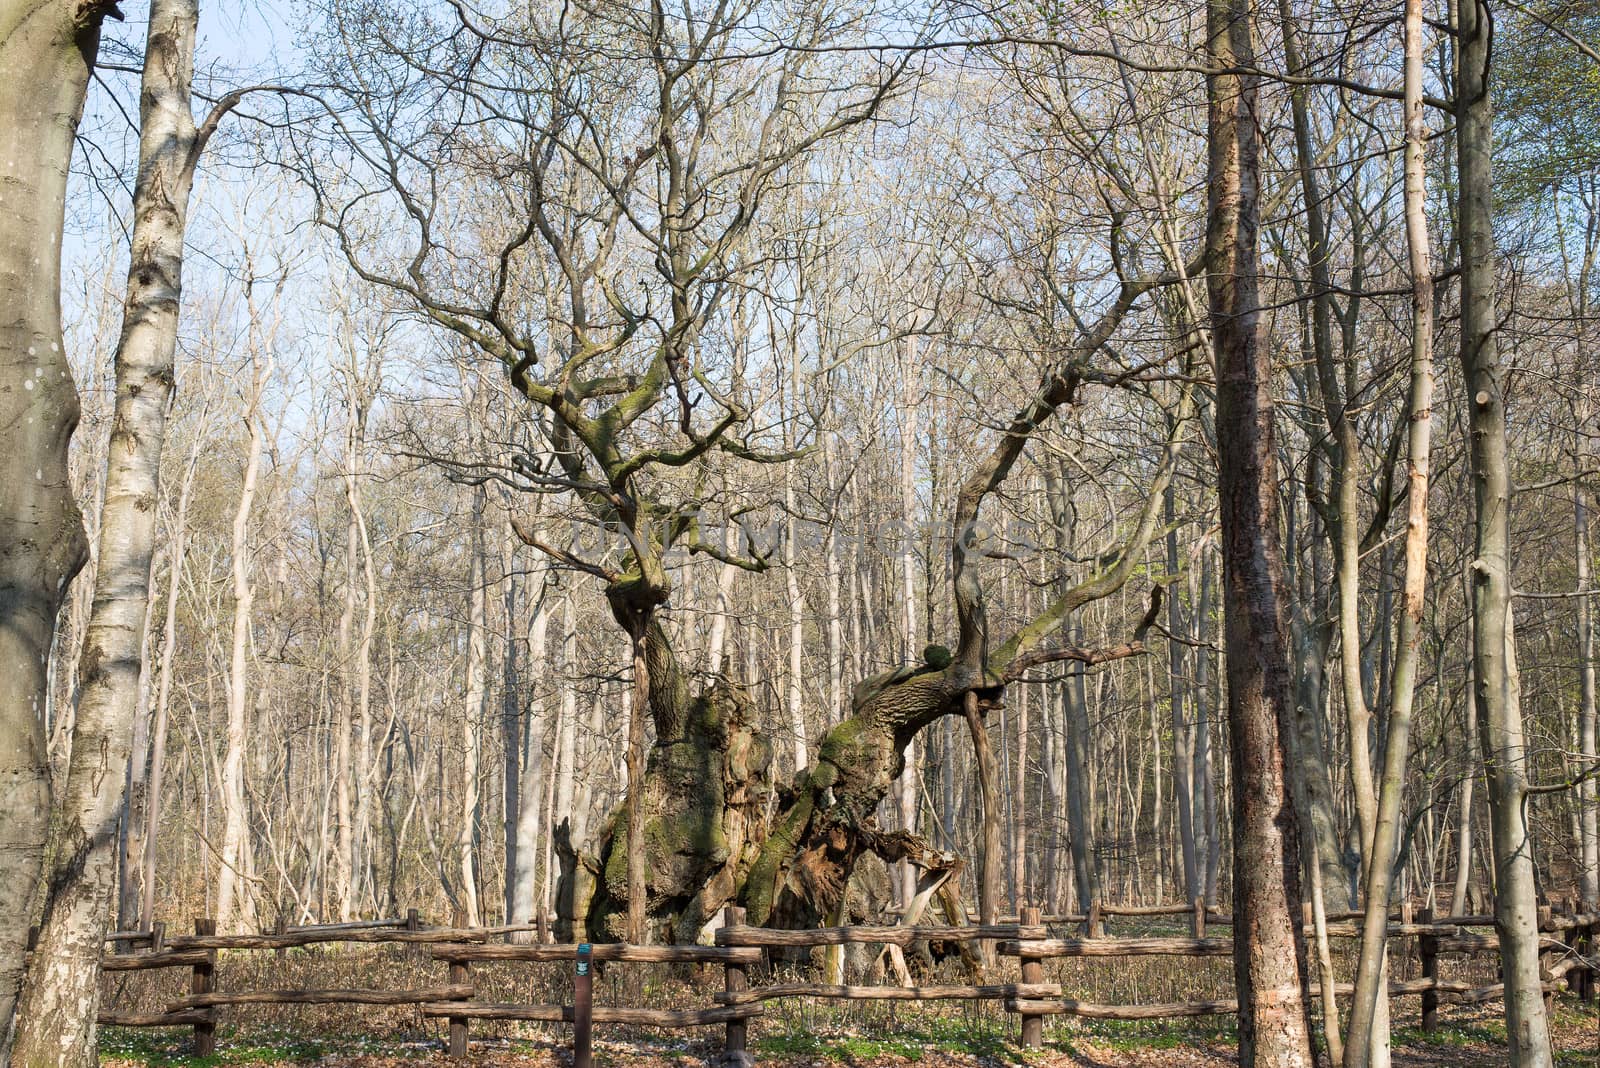 The kings oak tree, Kongeegen by Arrxxx